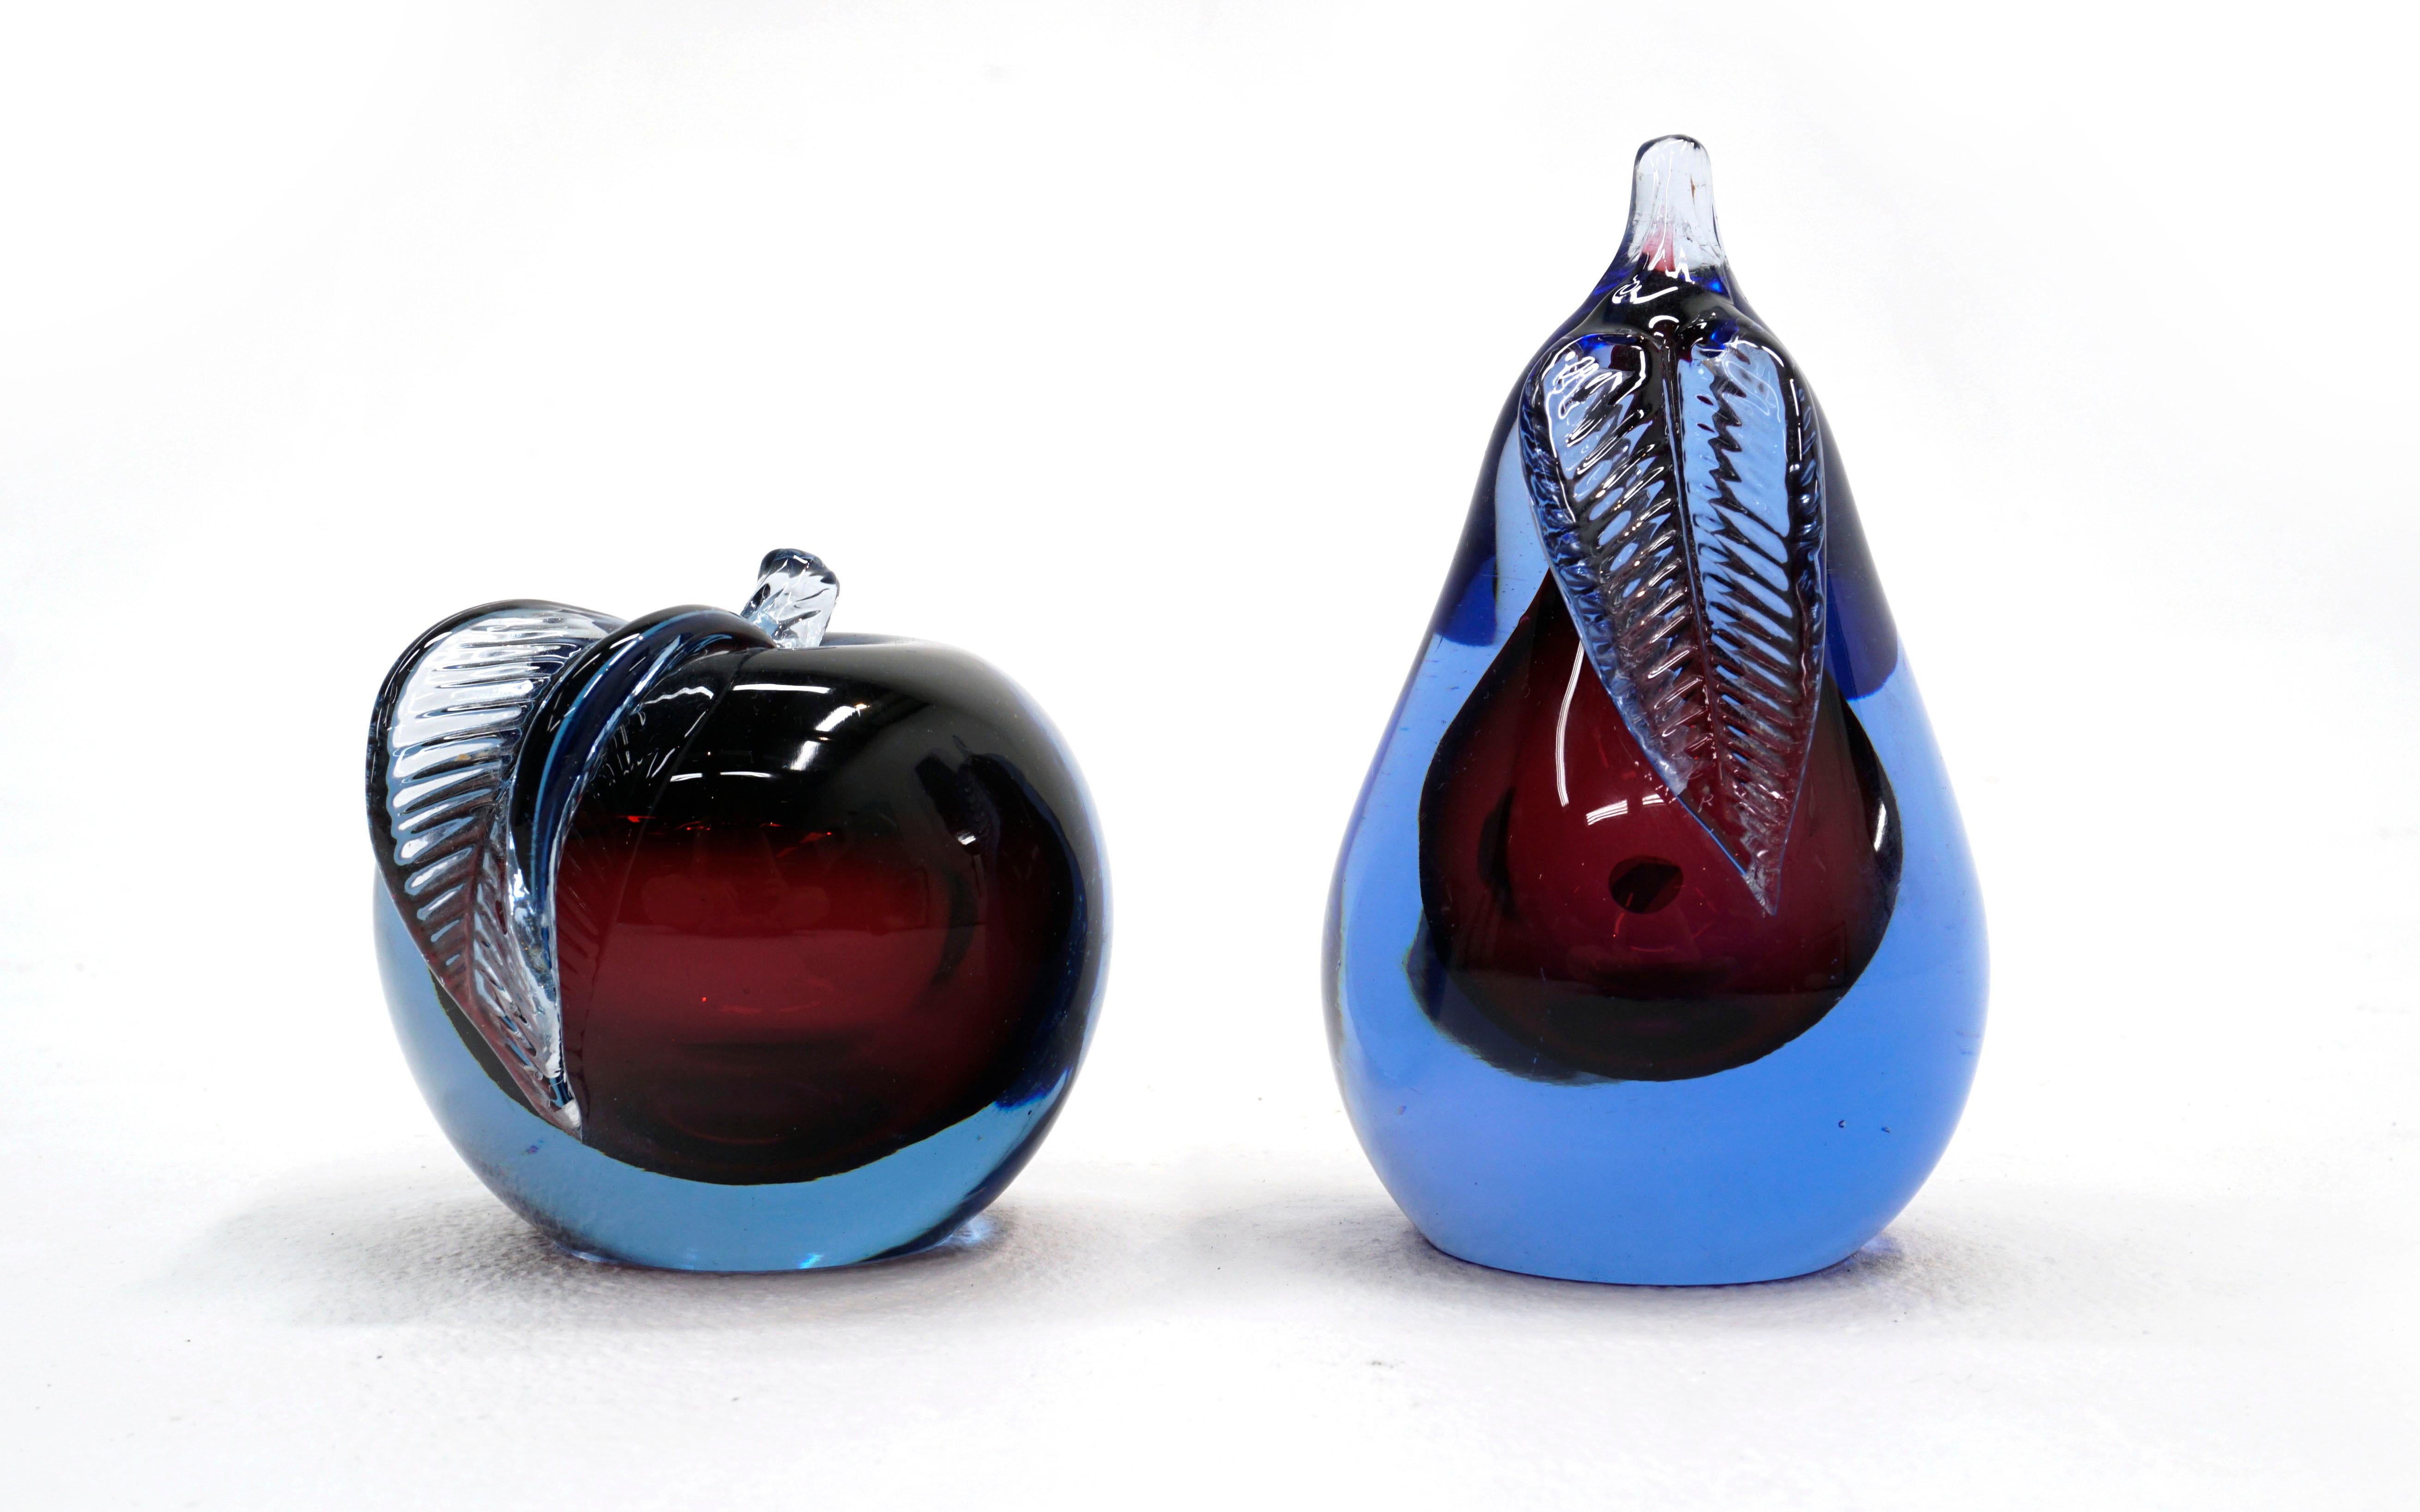 Pomme et poire en verre d'art de Murano Sommerso bleu et violet conçu par Alfredo Barbini. Tous deux possèdent deux surfaces plates pour la présentation ou peuvent être utilisés comme serre-livres. Pas d'éclats ni de réparations. Peut présenter une